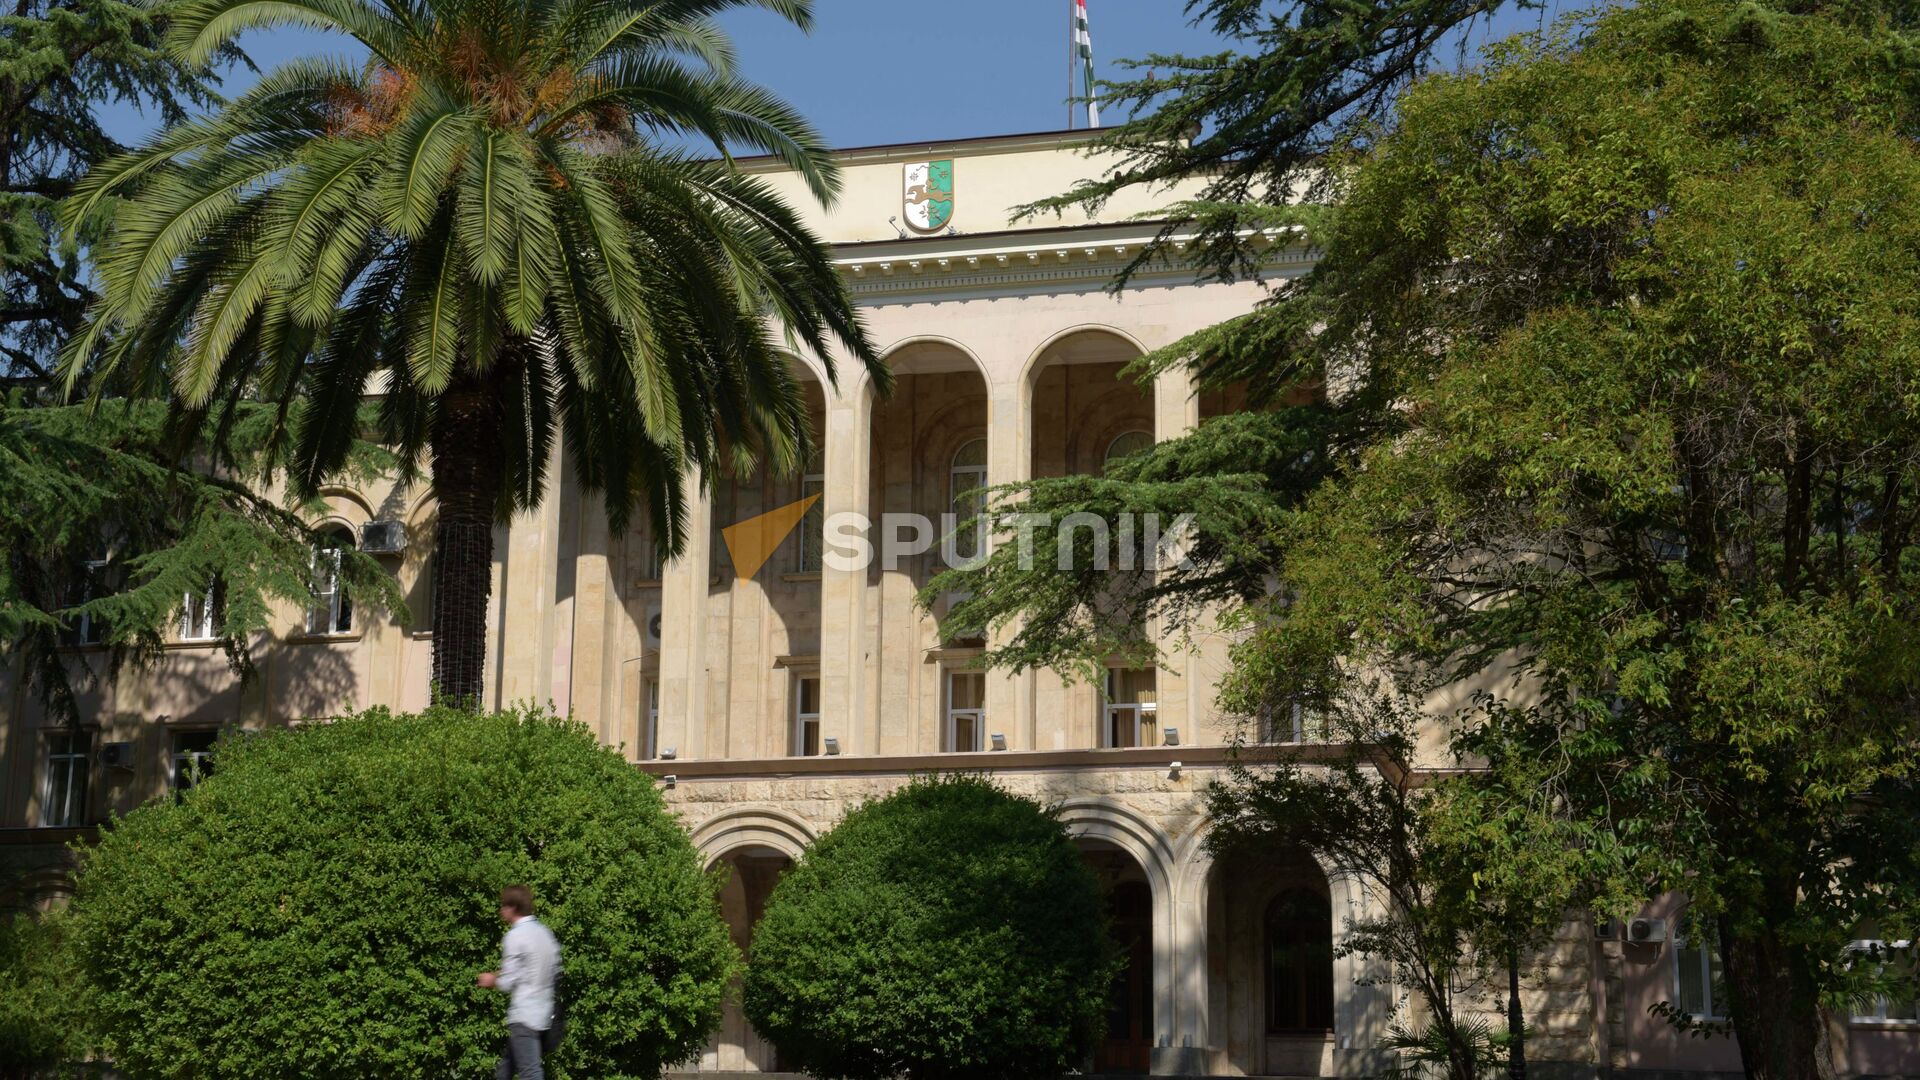 Резиденция президента Абхазии. Резиденция президента Абхазии в Сухуми. Сухумский университет в Тбилиси. Администрация президента Абхазии фото.